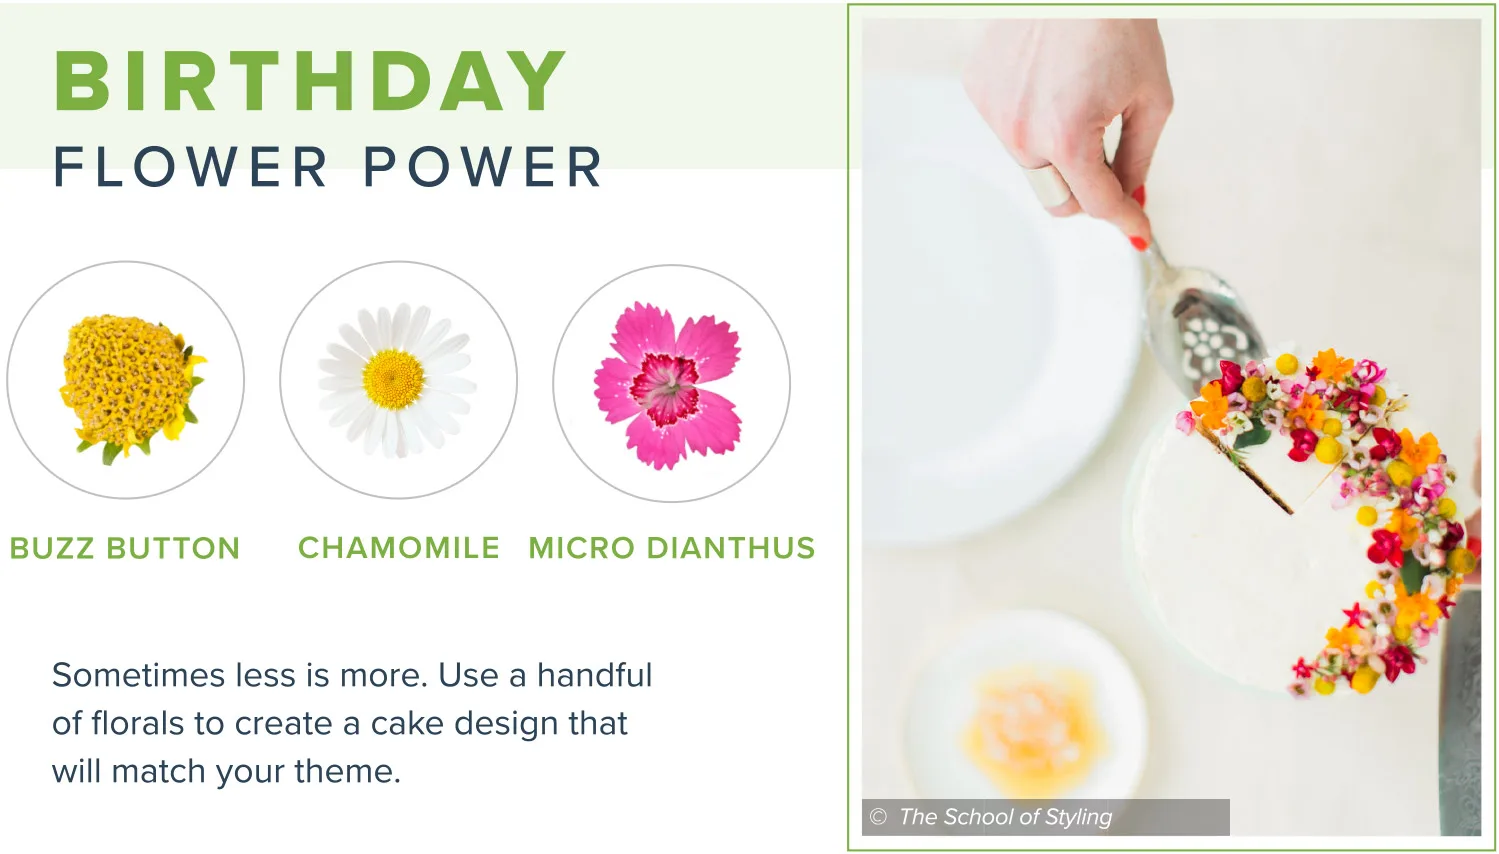 edible-flowers-birthday-flower-power